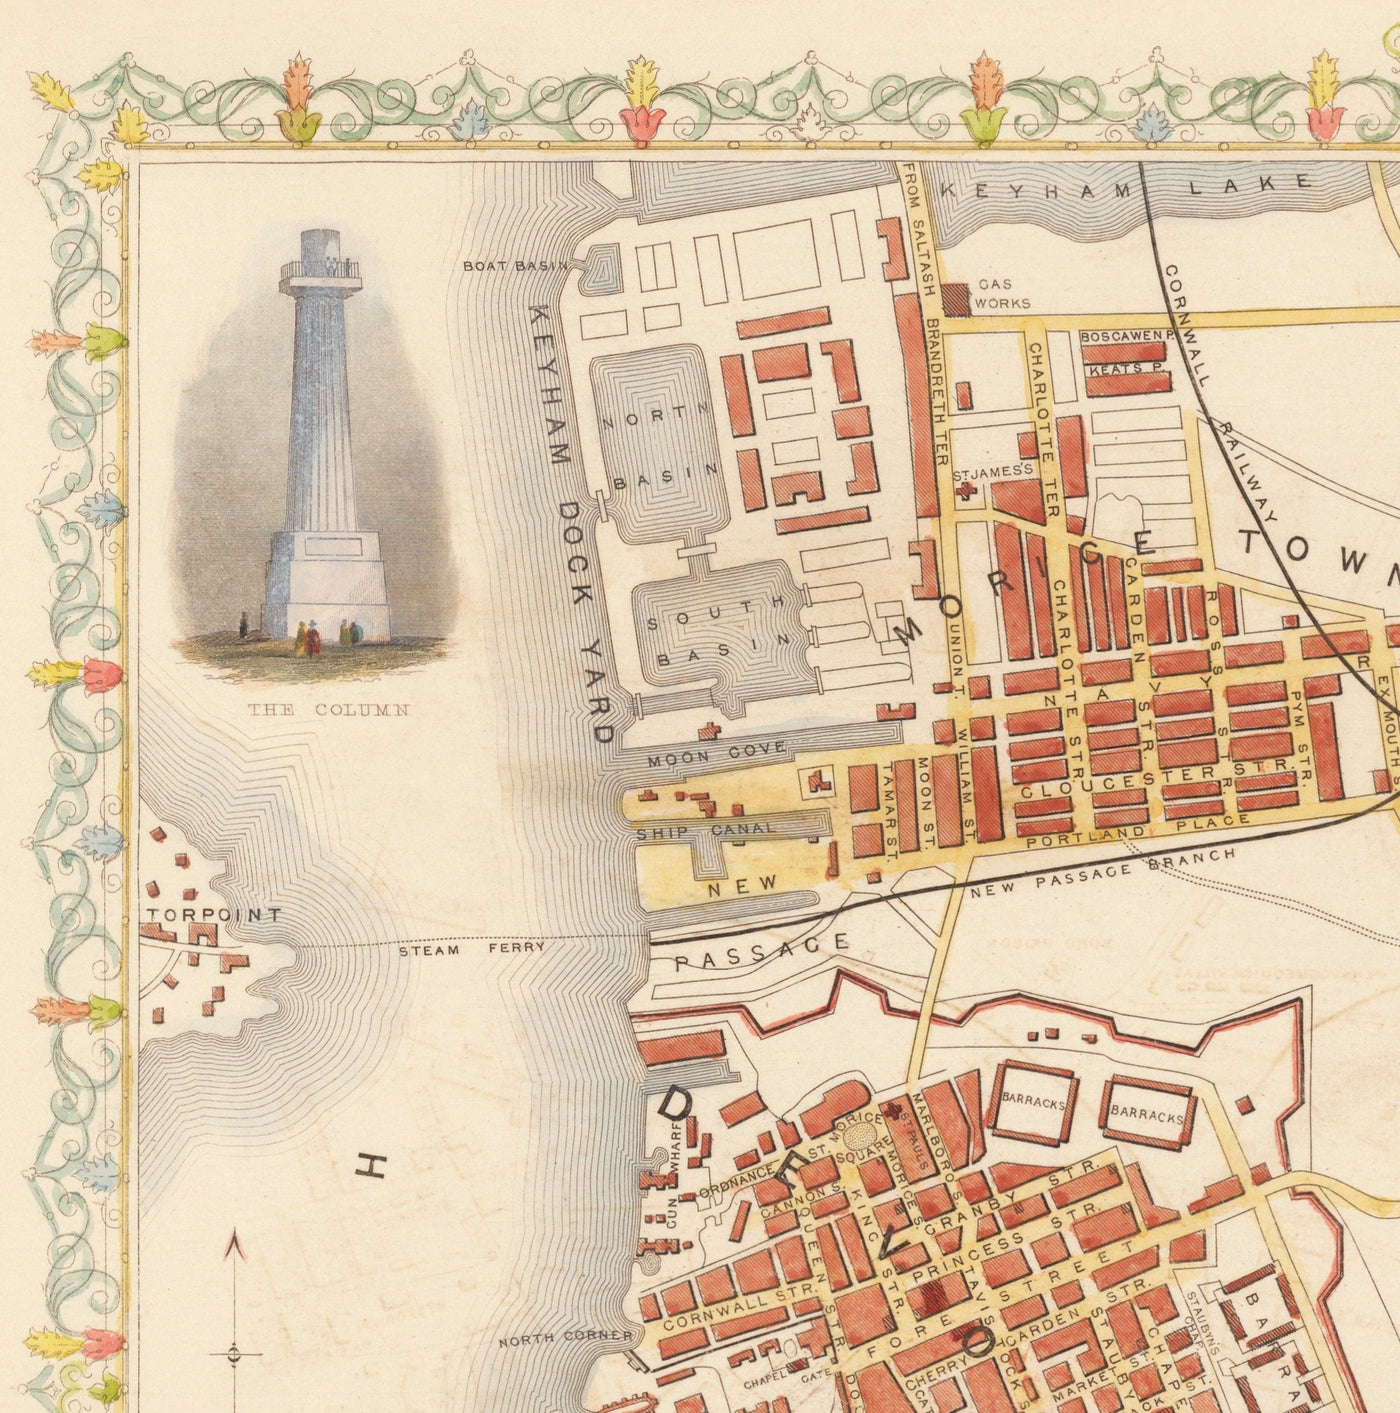 Alte handgefärterte Karte von Plymouth 1851 von Tallis, Rapkin - Stonehouse, Devonport